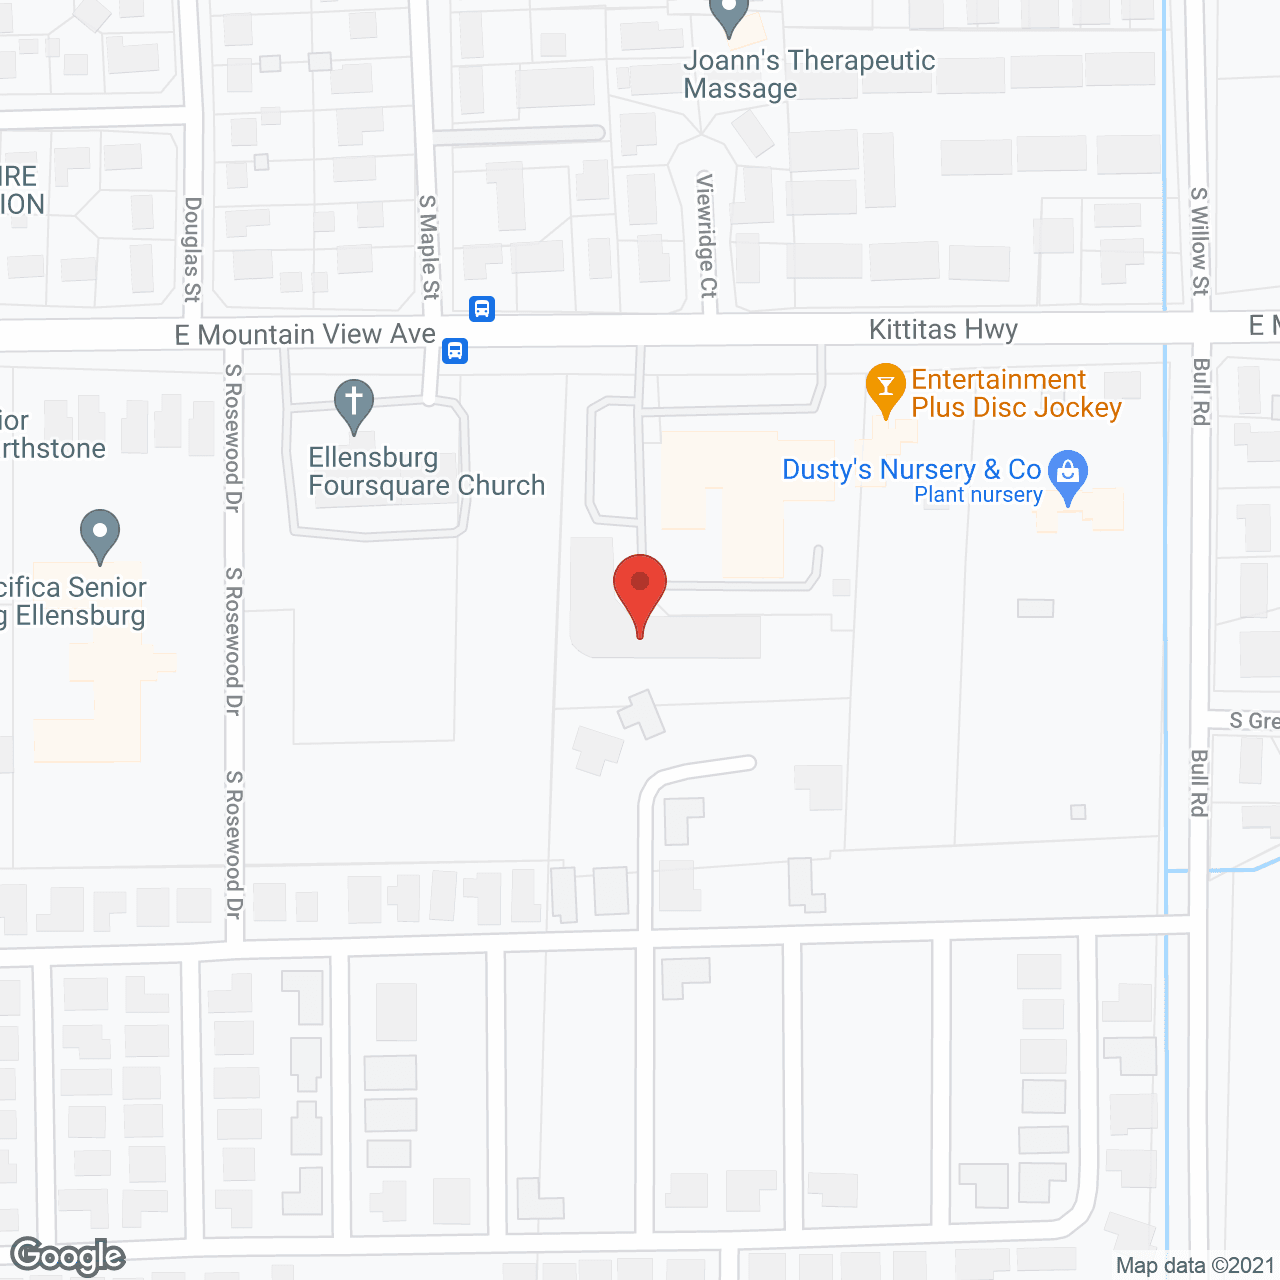 Avista Ellensburg in google map